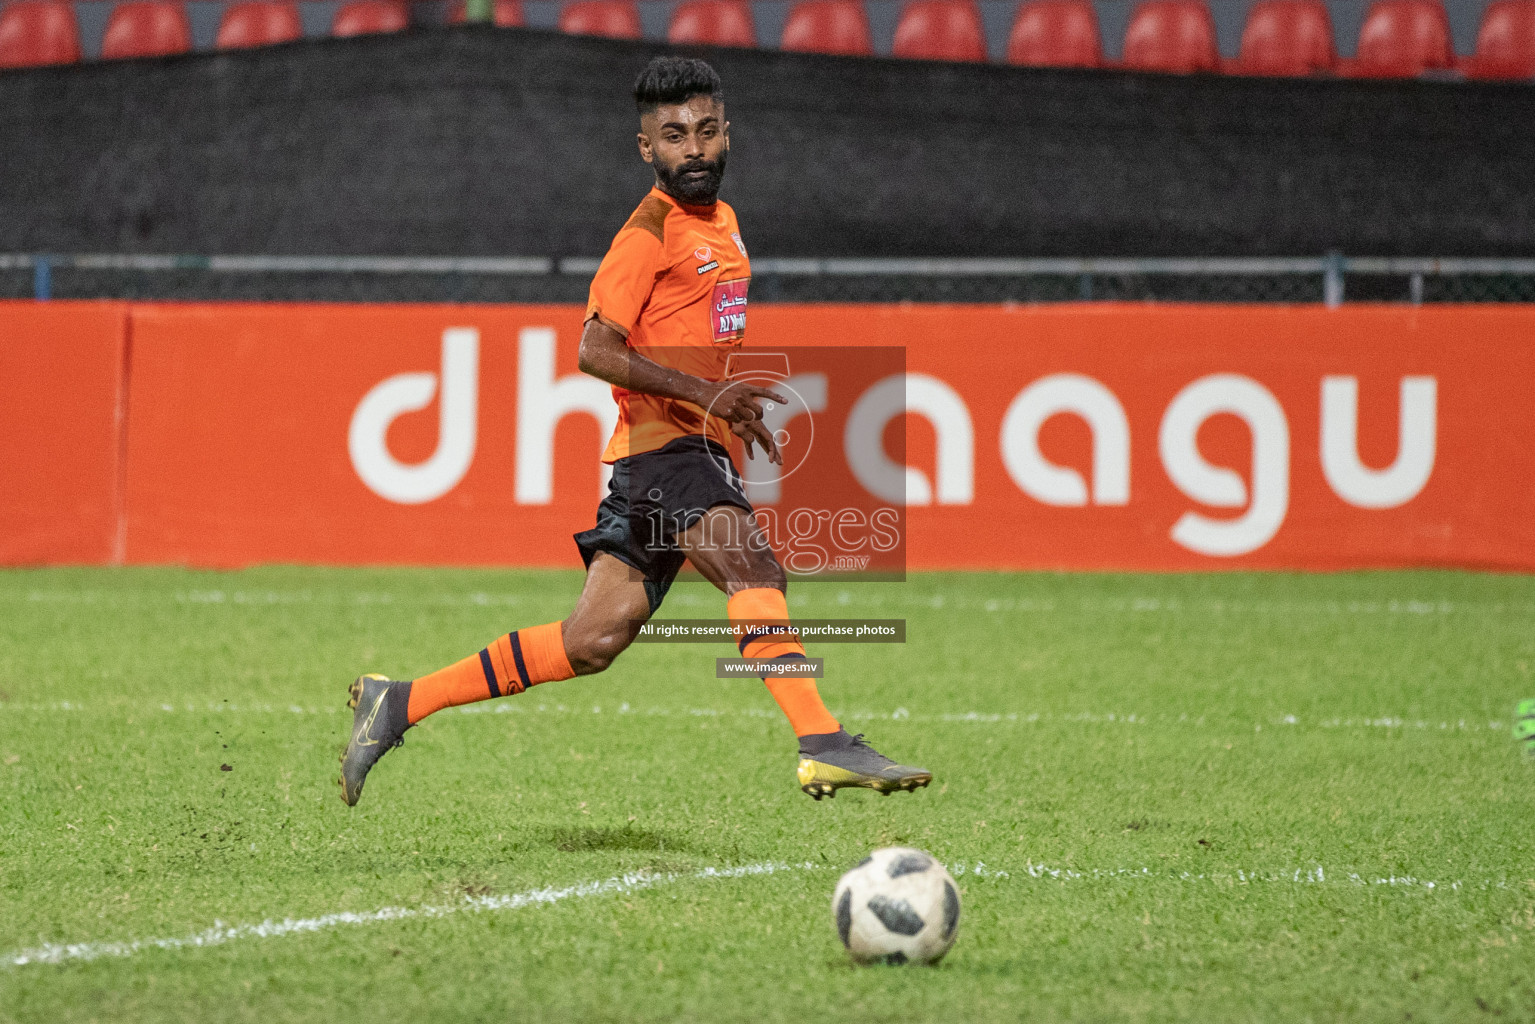 Eagles vs Da Grande SC in Dhiraagu Dhivehi Premier League 2019, in Male' Maldives on 24th Sep 2019. Photos:Suadh Abdul Sattar / images.mv